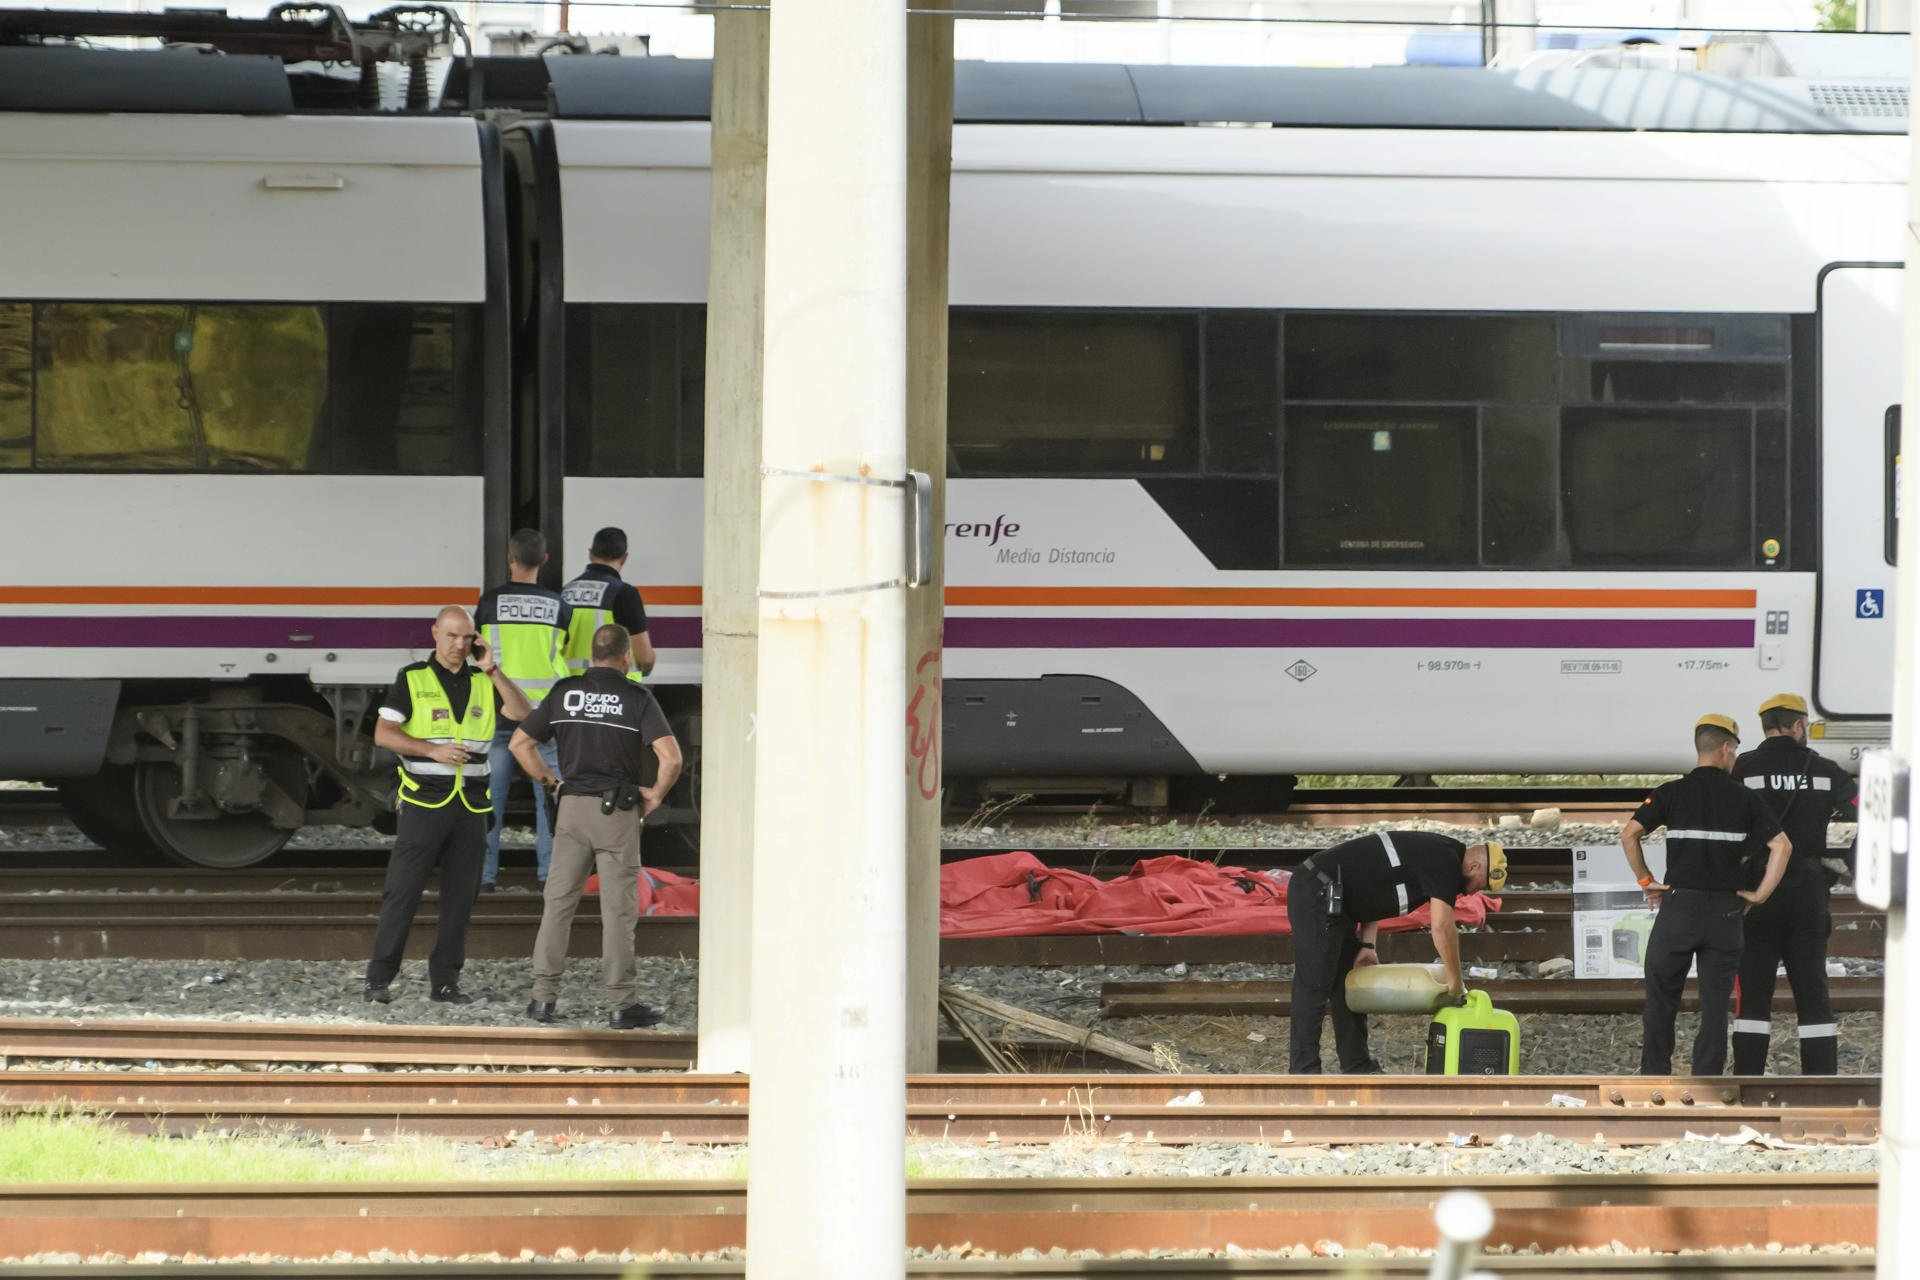 Agentes del Cuerpo Nacional de Policía, de la UME y de seguridad de Renfe junto al cuerpo de una persona que ha sido hallado este lunes entre dos vagones de un tren en la estación de Santa Justa de Sevilla, donde el pasado jueves desapareció el joven cord